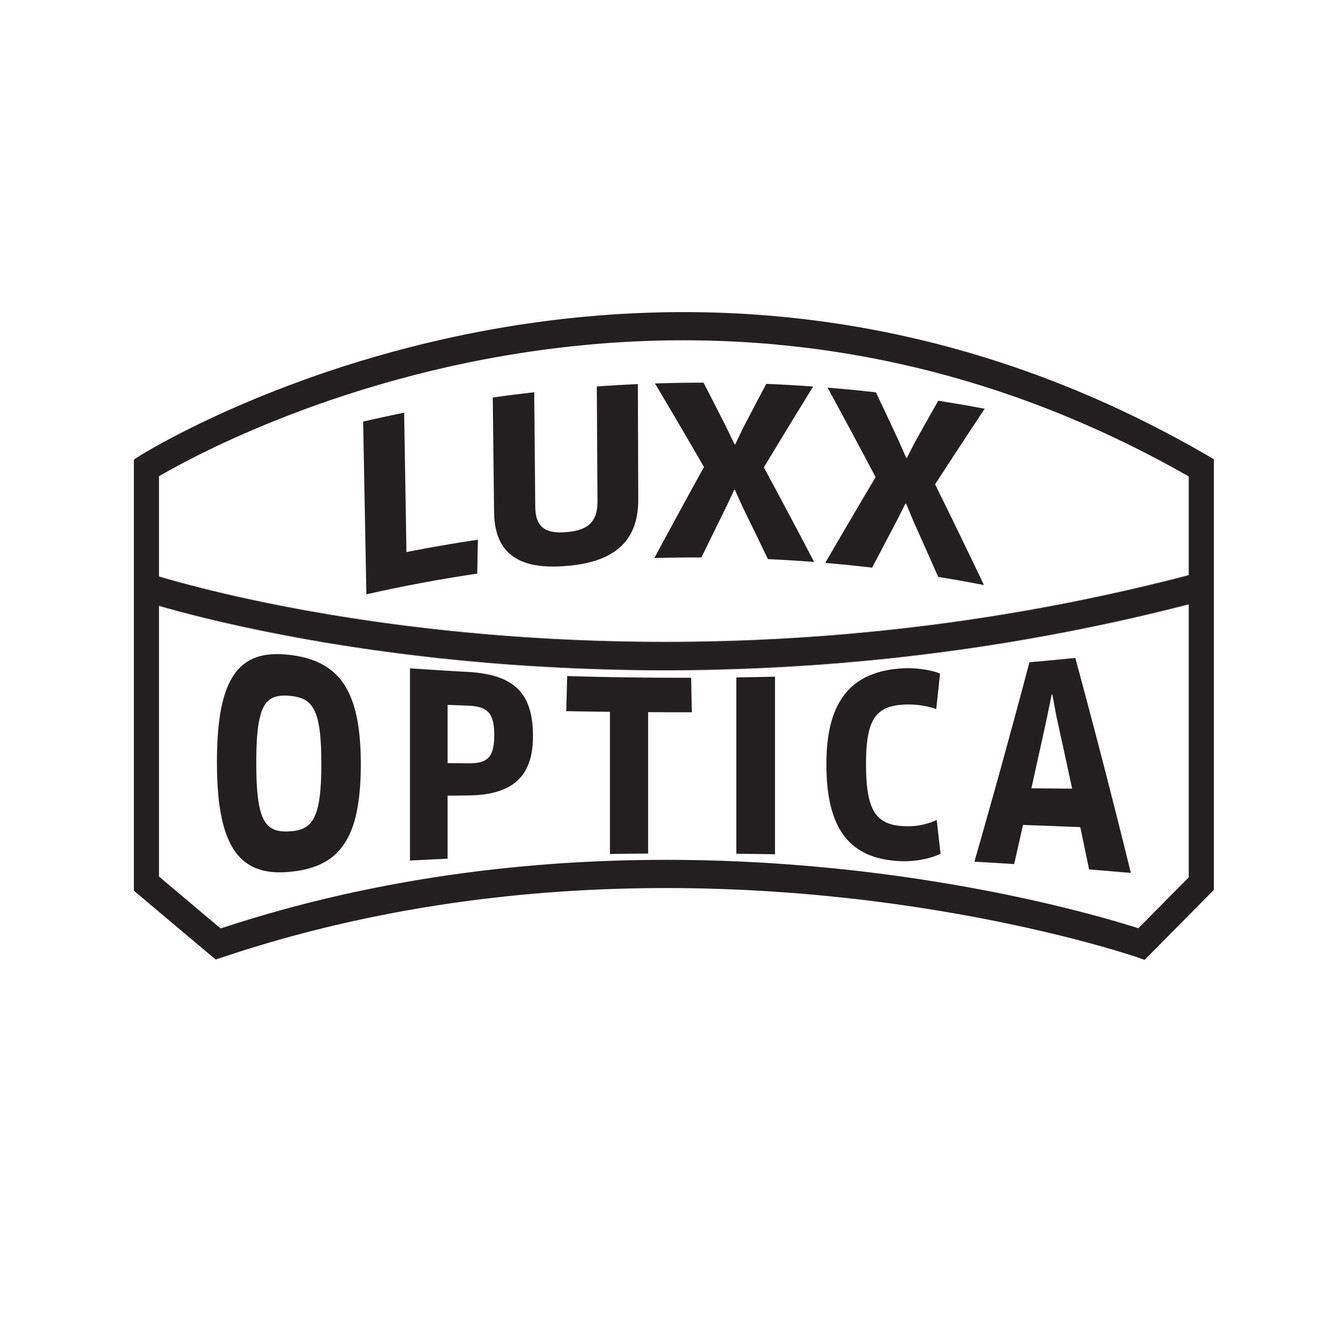 www.luxxoptica.com